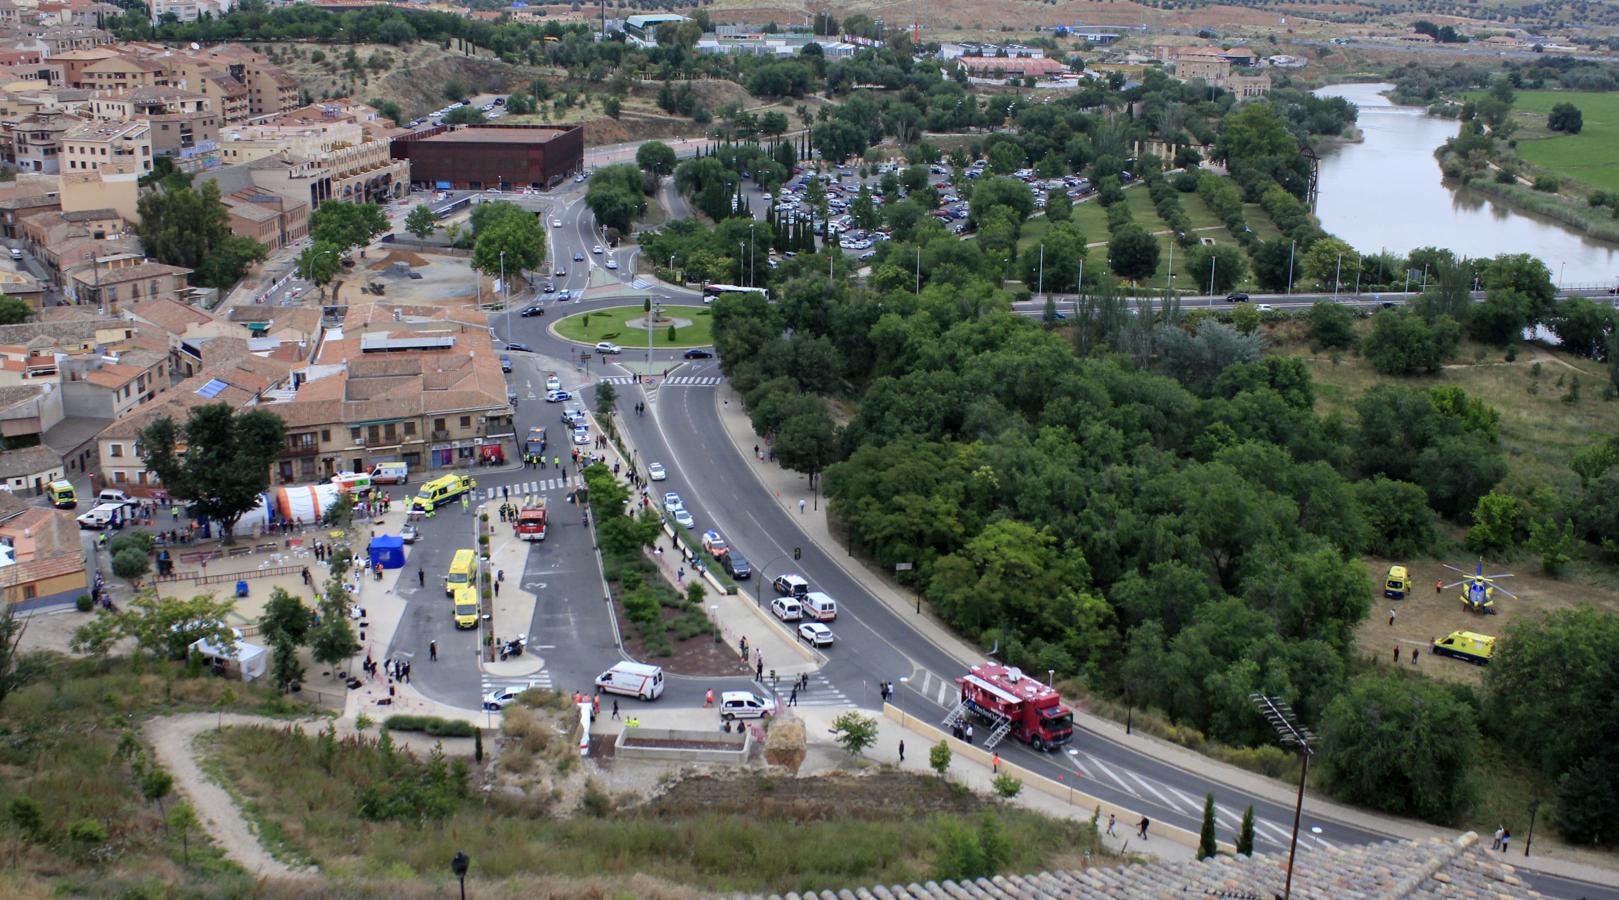 El simulacro de atentado terrorista de Toledo, en imágenes